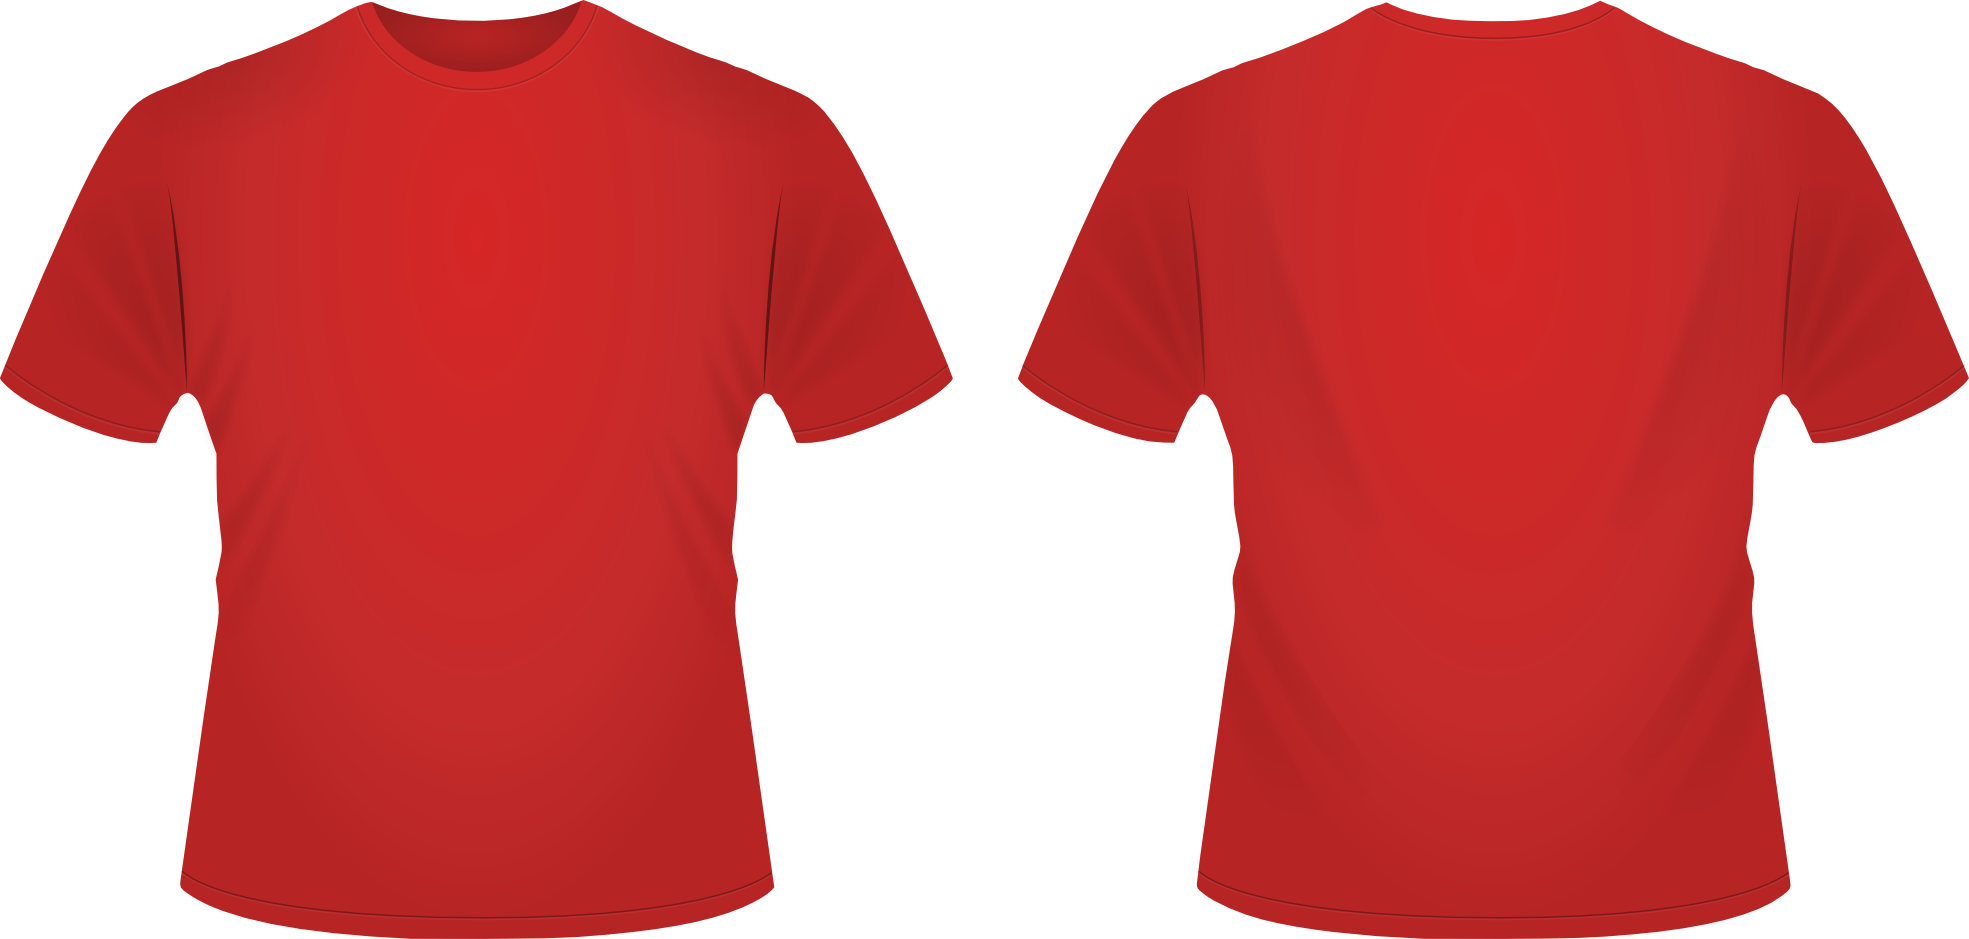 Download T Shirt SVG by DanRabbit on DeviantArt